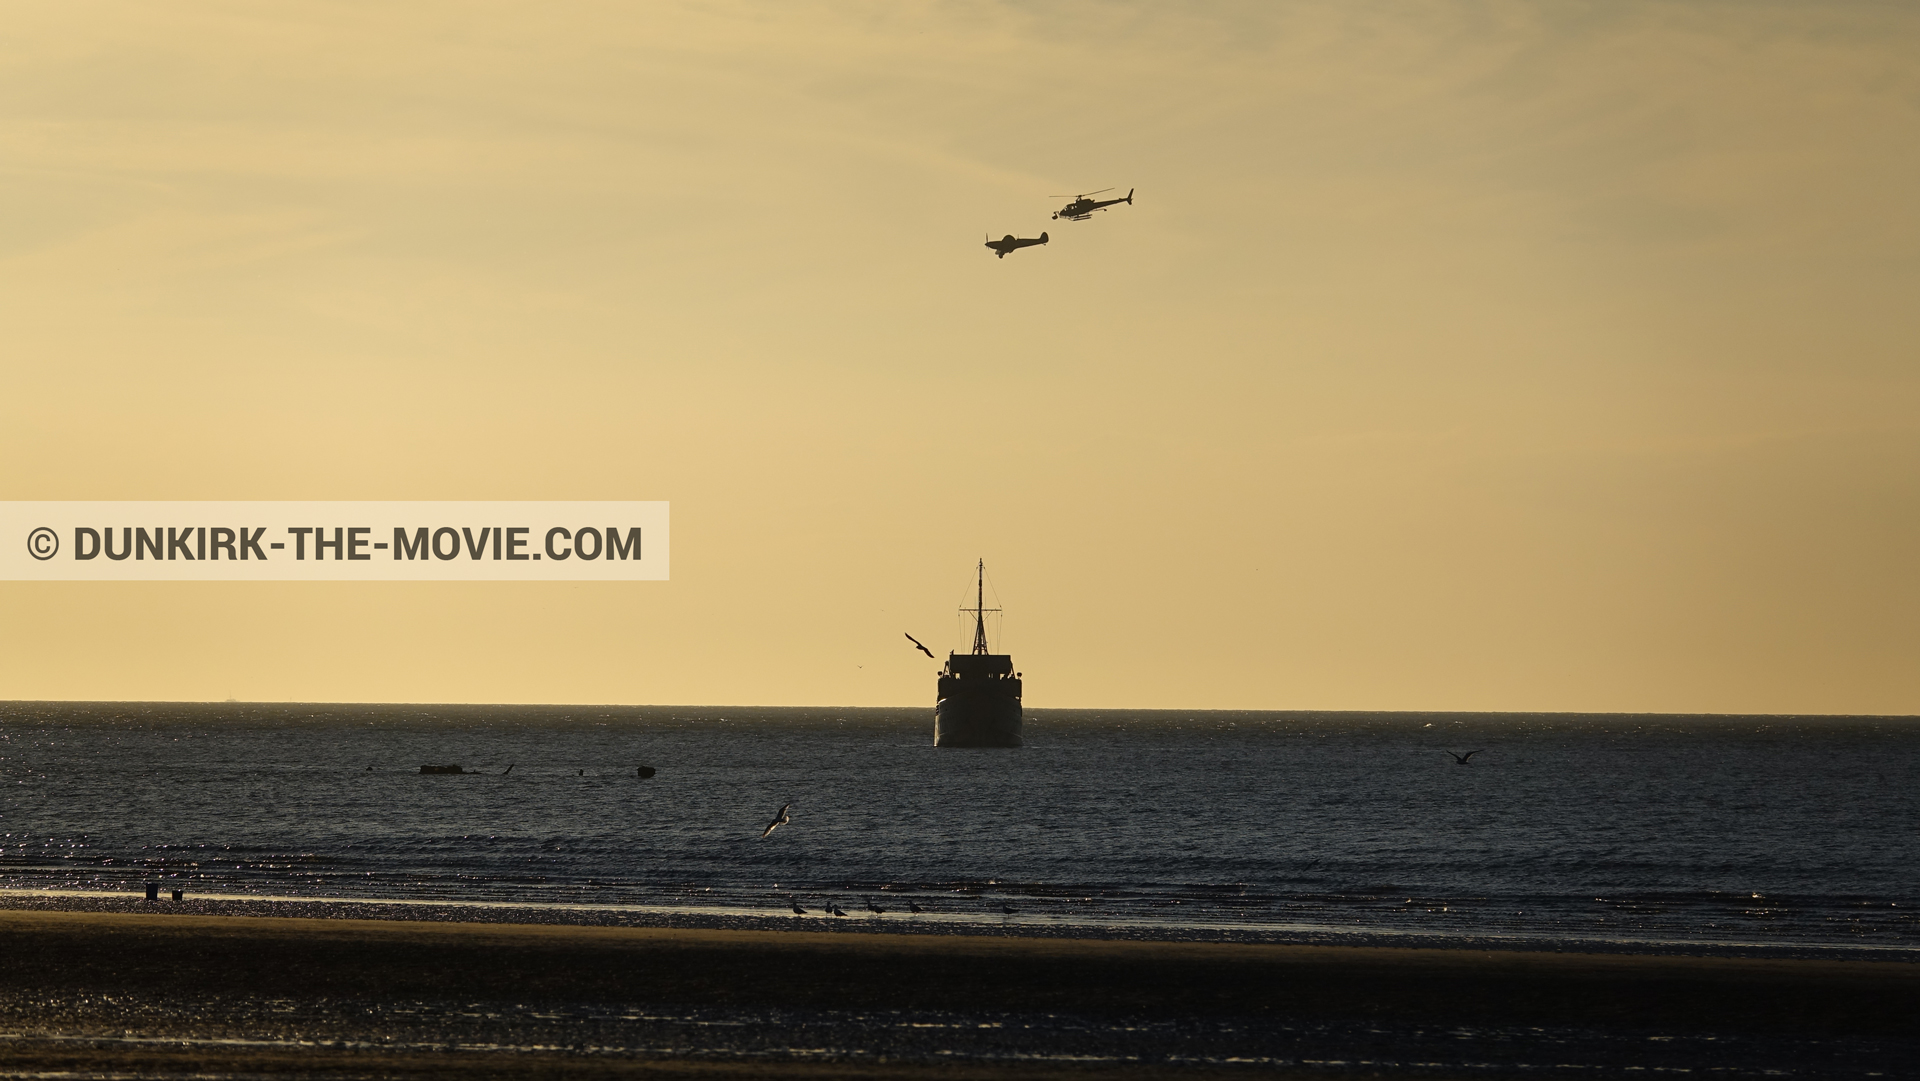 Fotos con avion, barco, cielo anaranjado, cámara helicóptero,  durante el rodaje de la película Dunkerque de Nolan